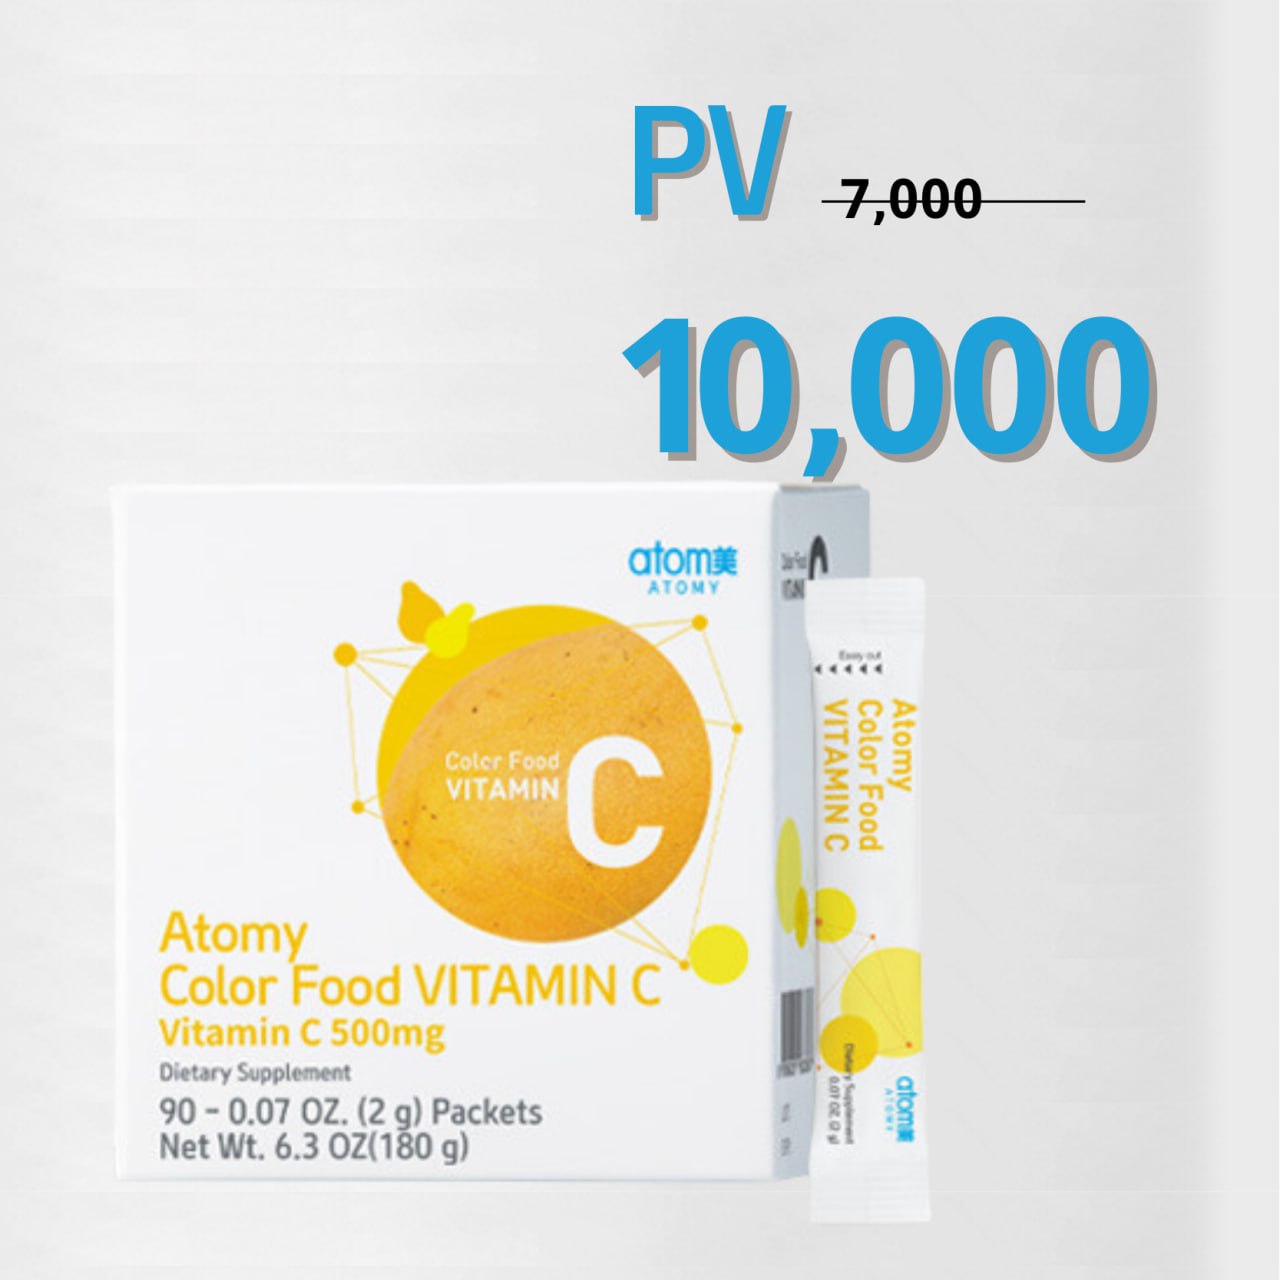 Atomy Color Food Vitamin C